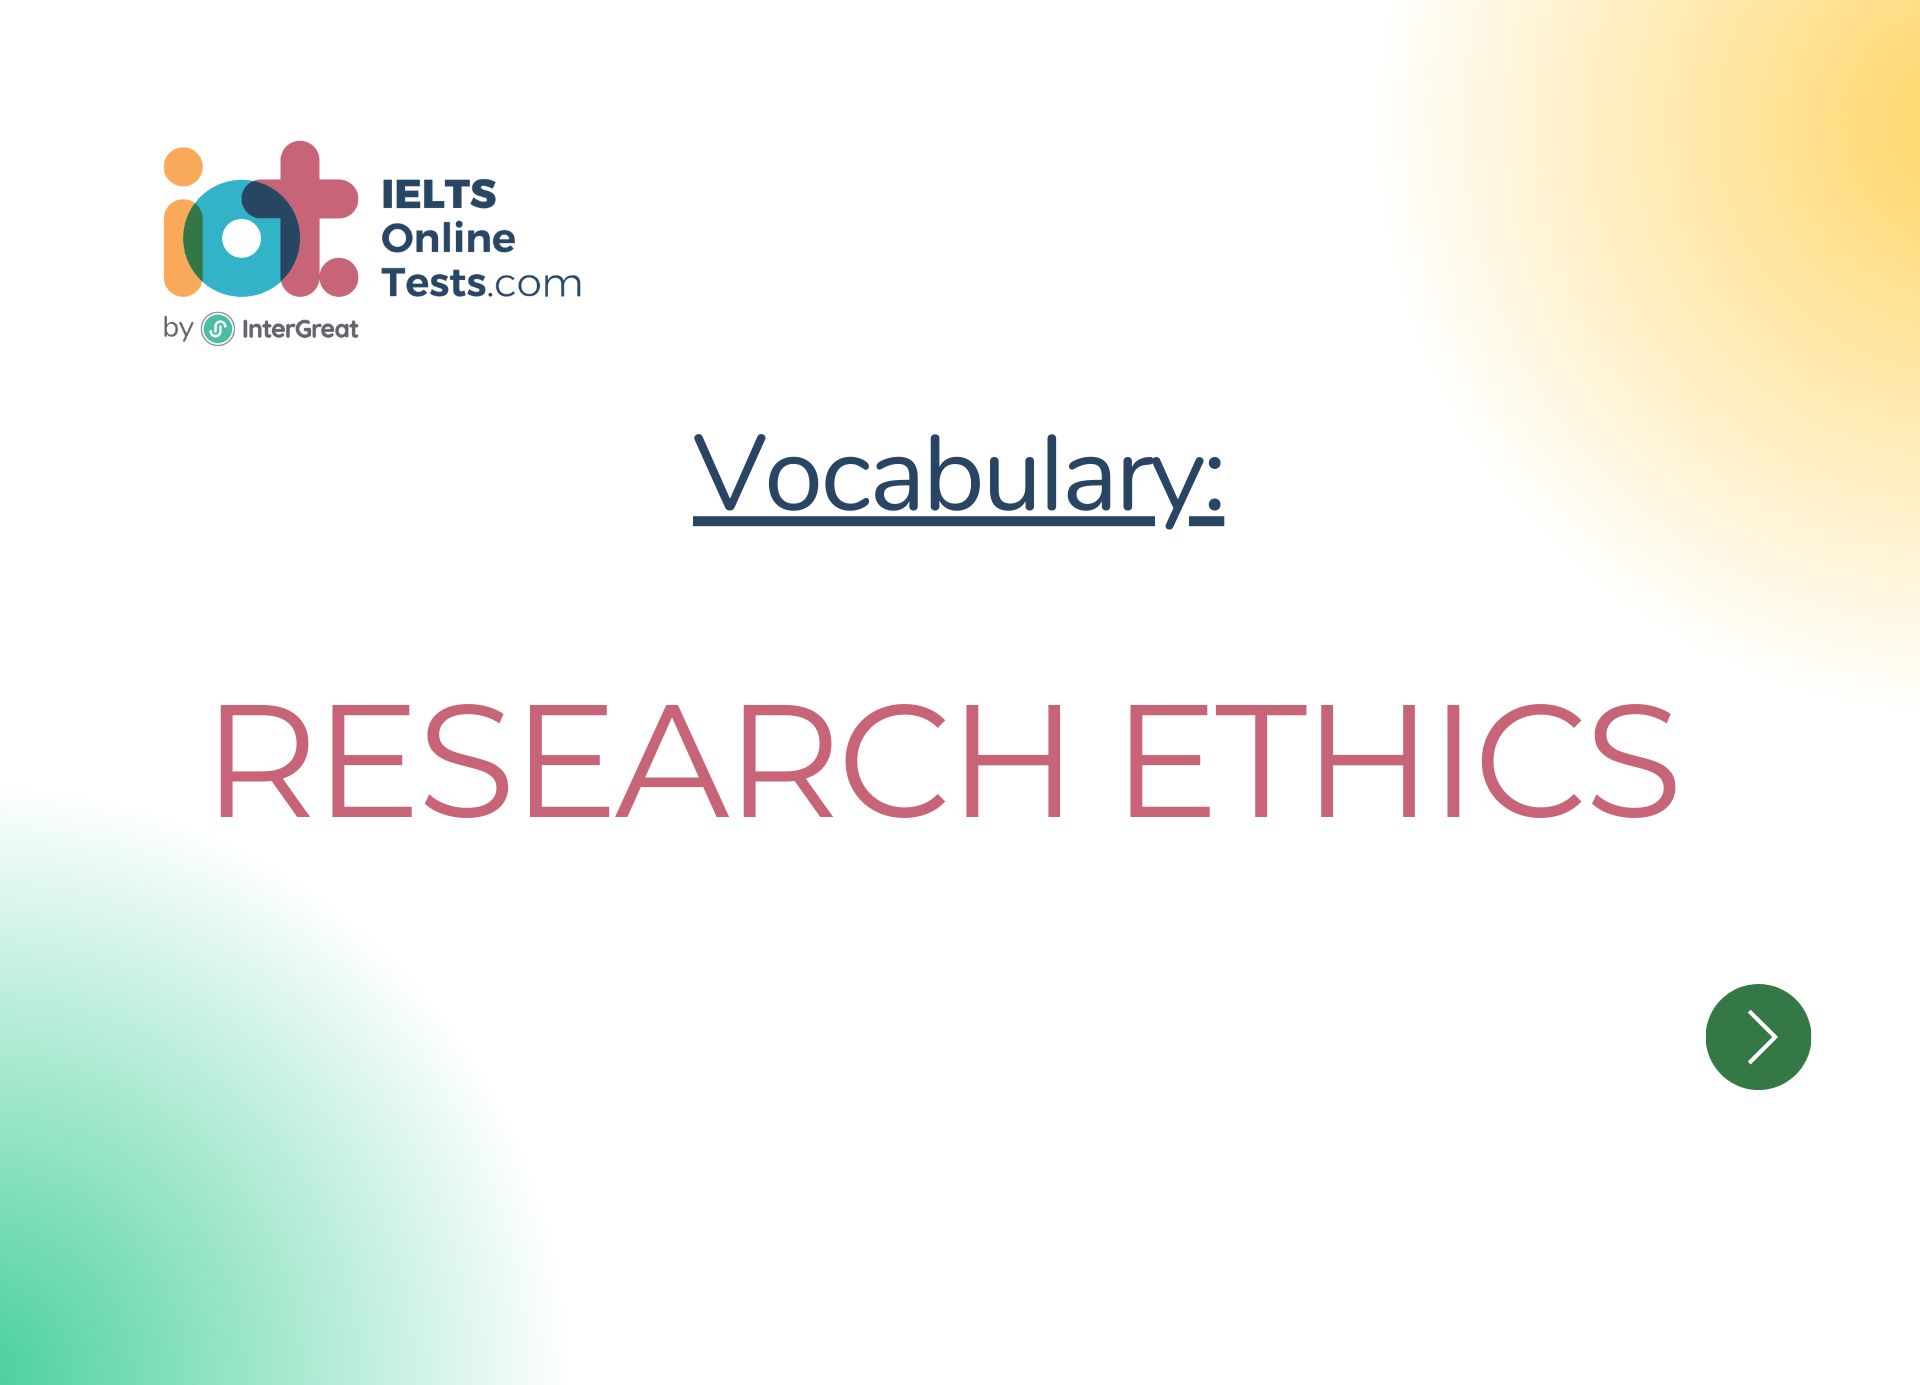 Đạo đức nghiên cứu (Research ethics)